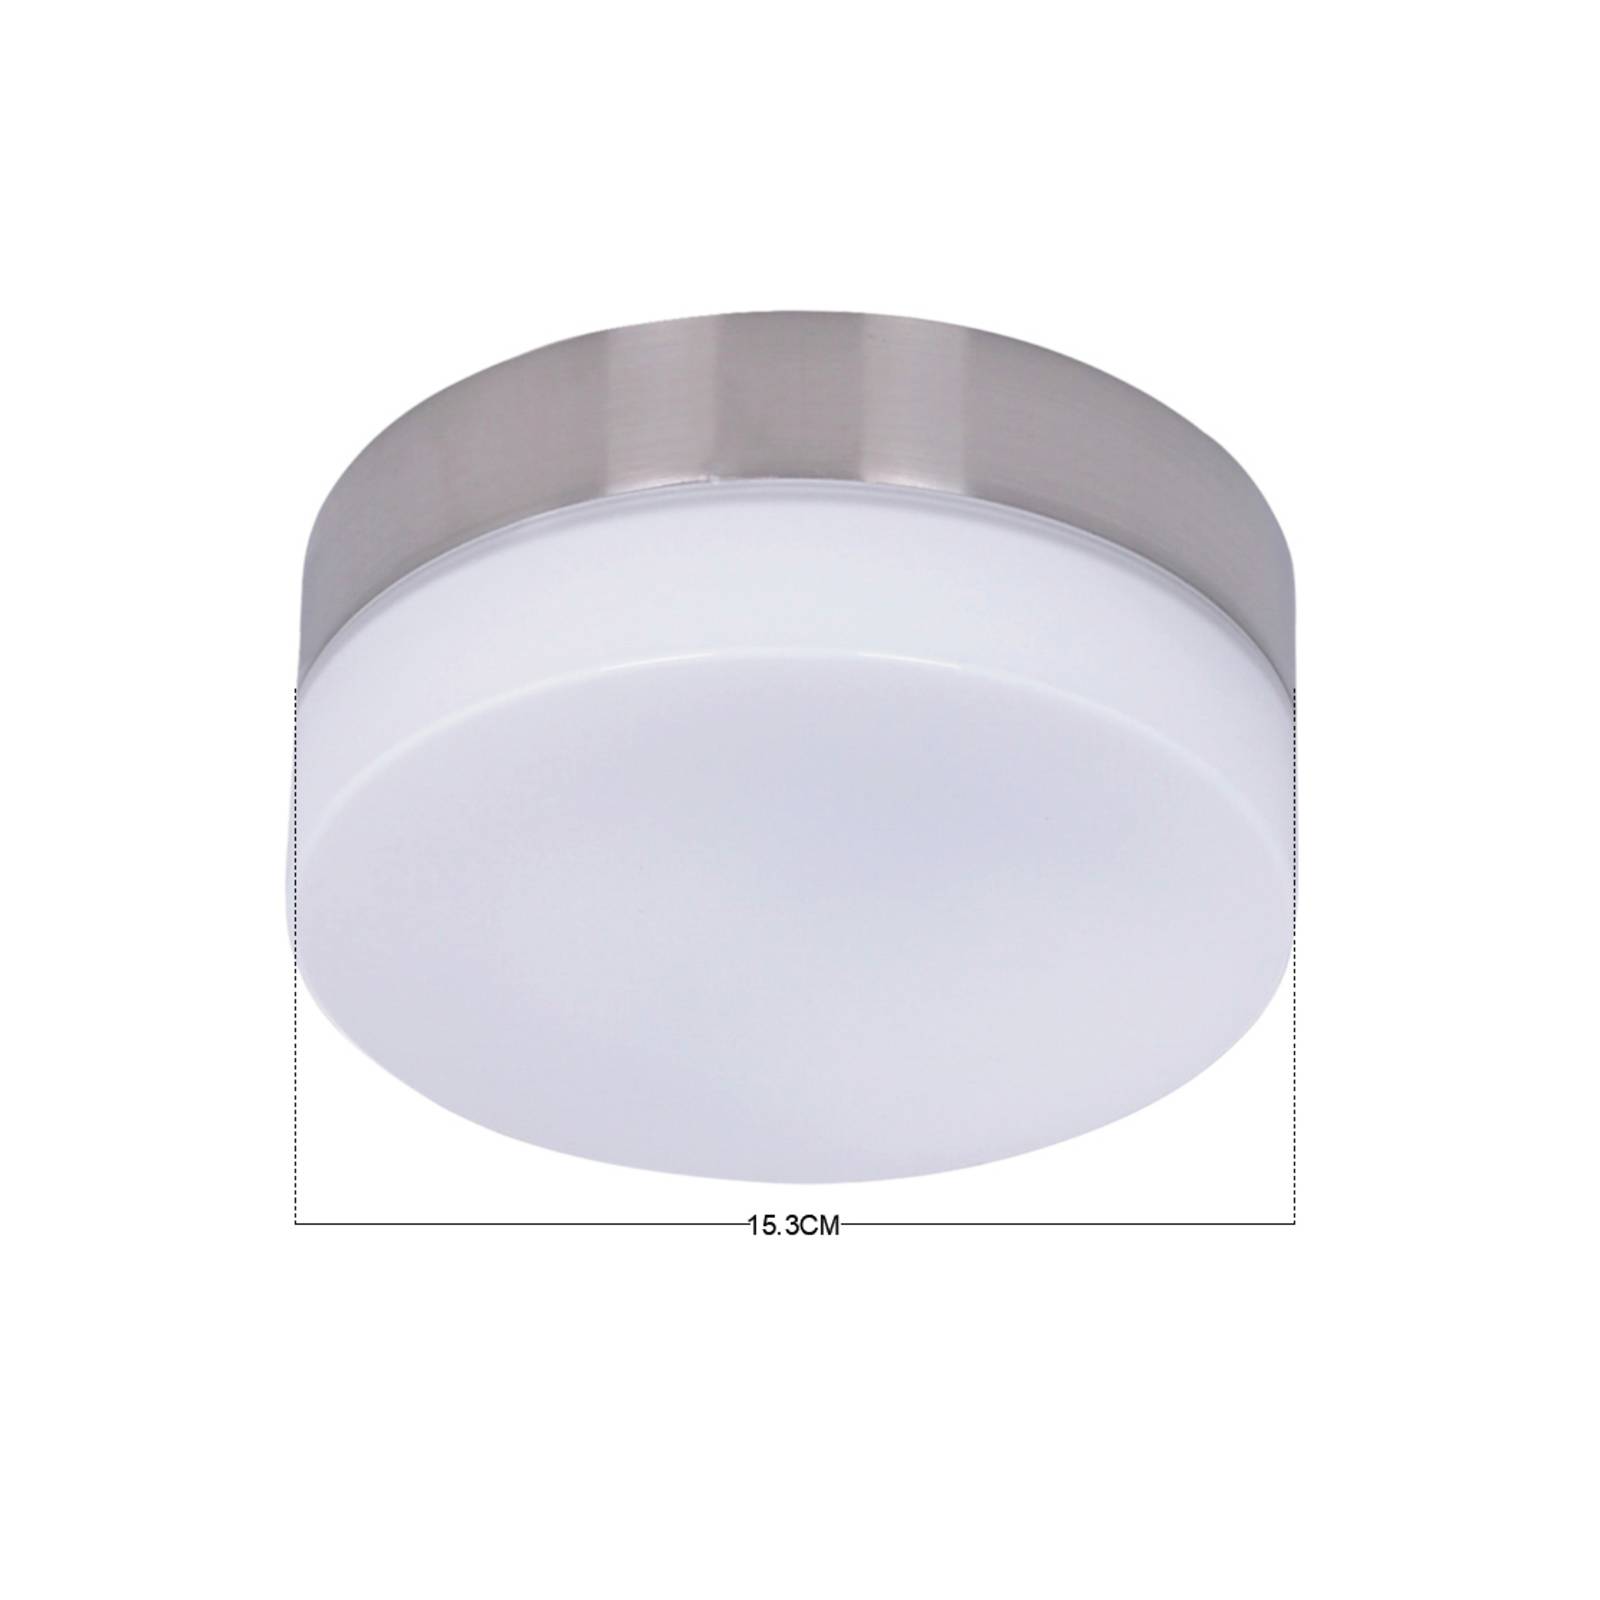 Image of Beacon Lighting Kit d'éclairage p. Ventilateur de plafond - GX53 chrome b. 9333509104605